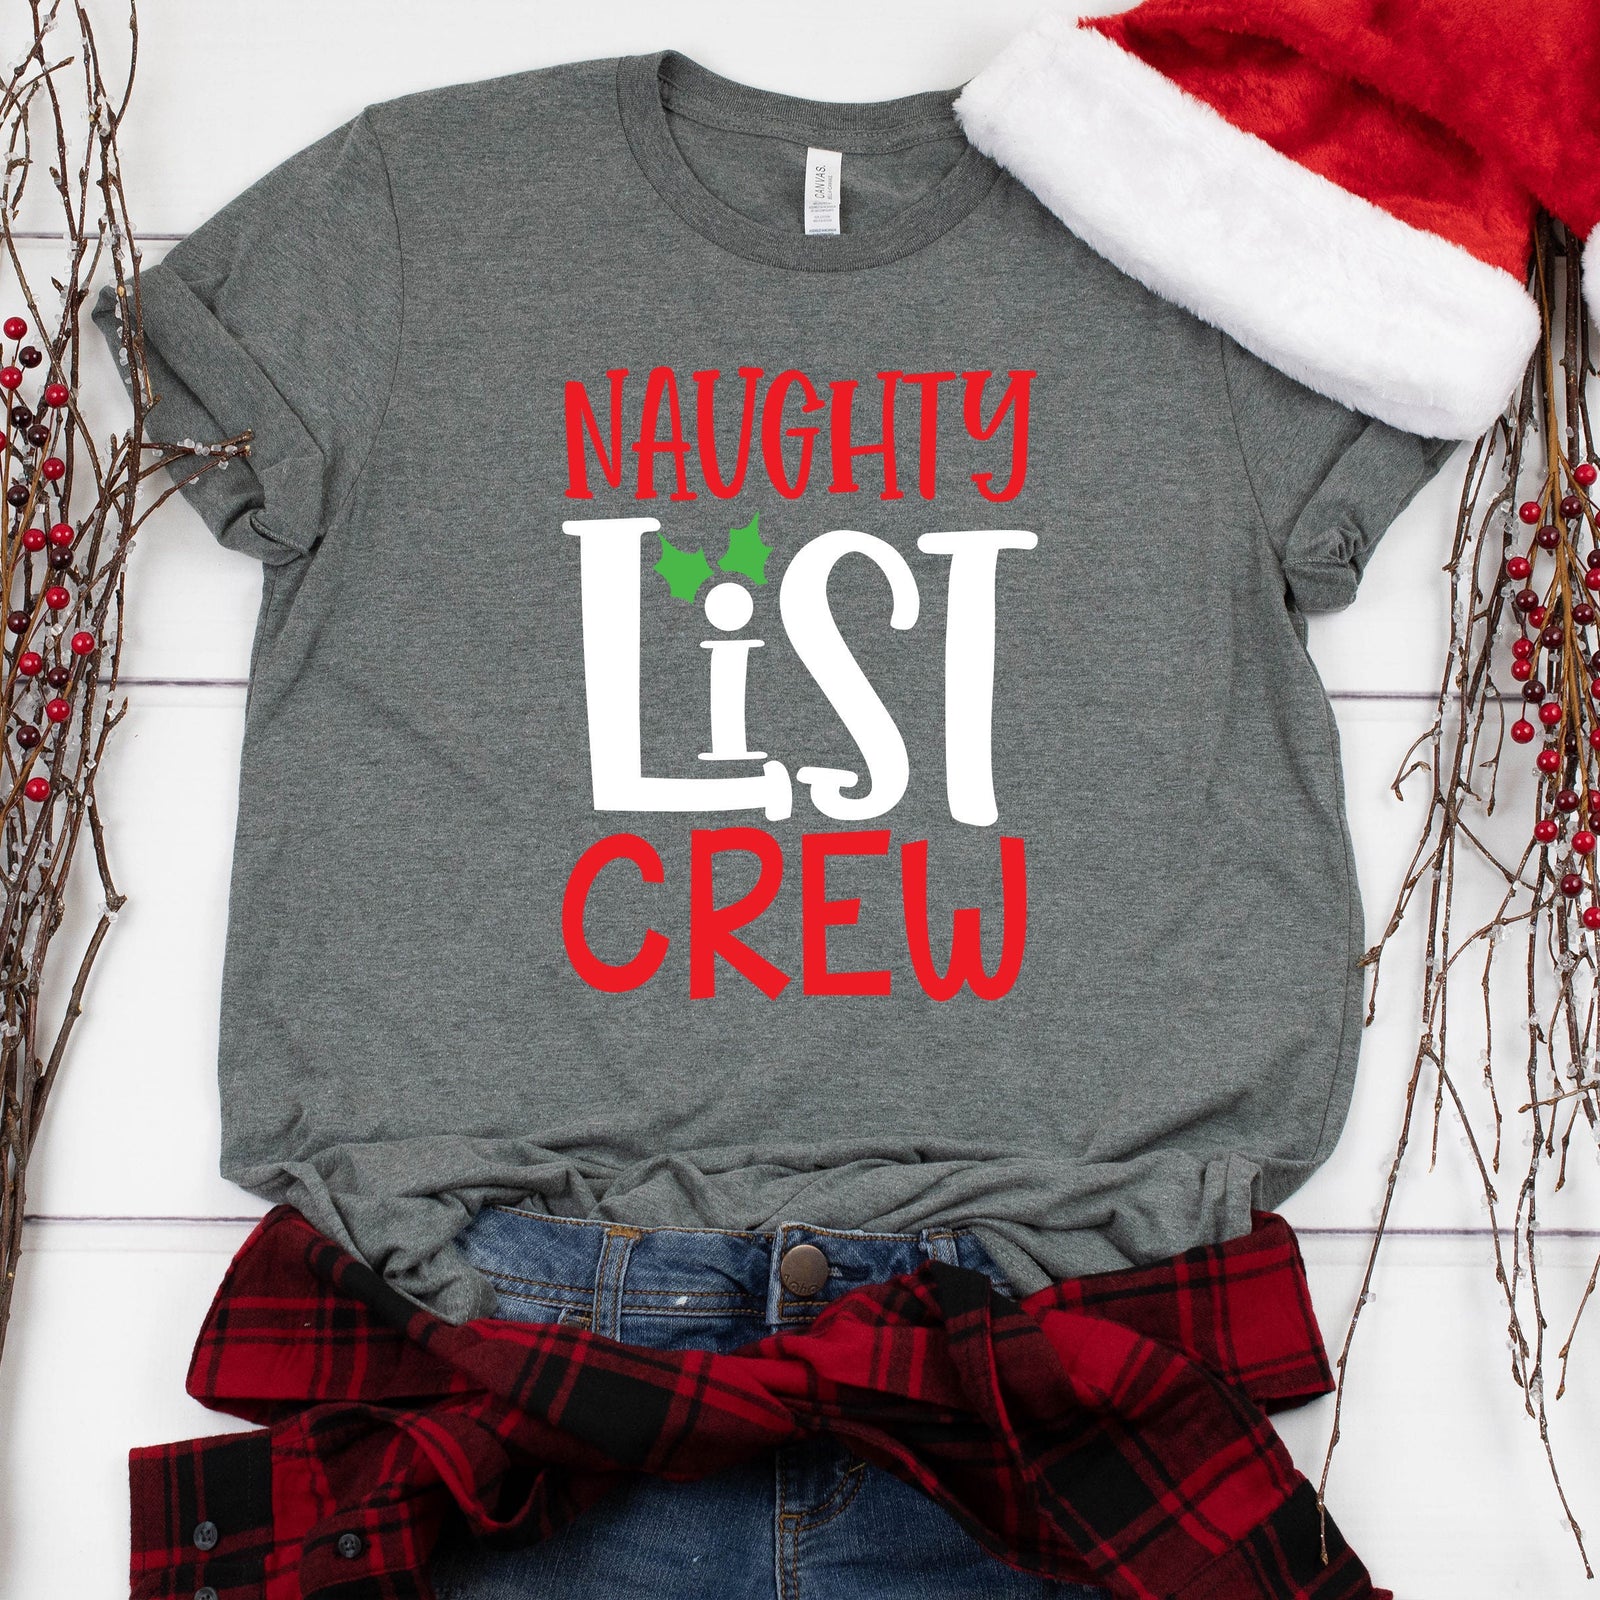 Naughty List Crew Christmas T Shirt - Funny Christmas Family Shirt - Holiday Matching Christmas Party Shirt - Christmas Crew Gift Shirt -